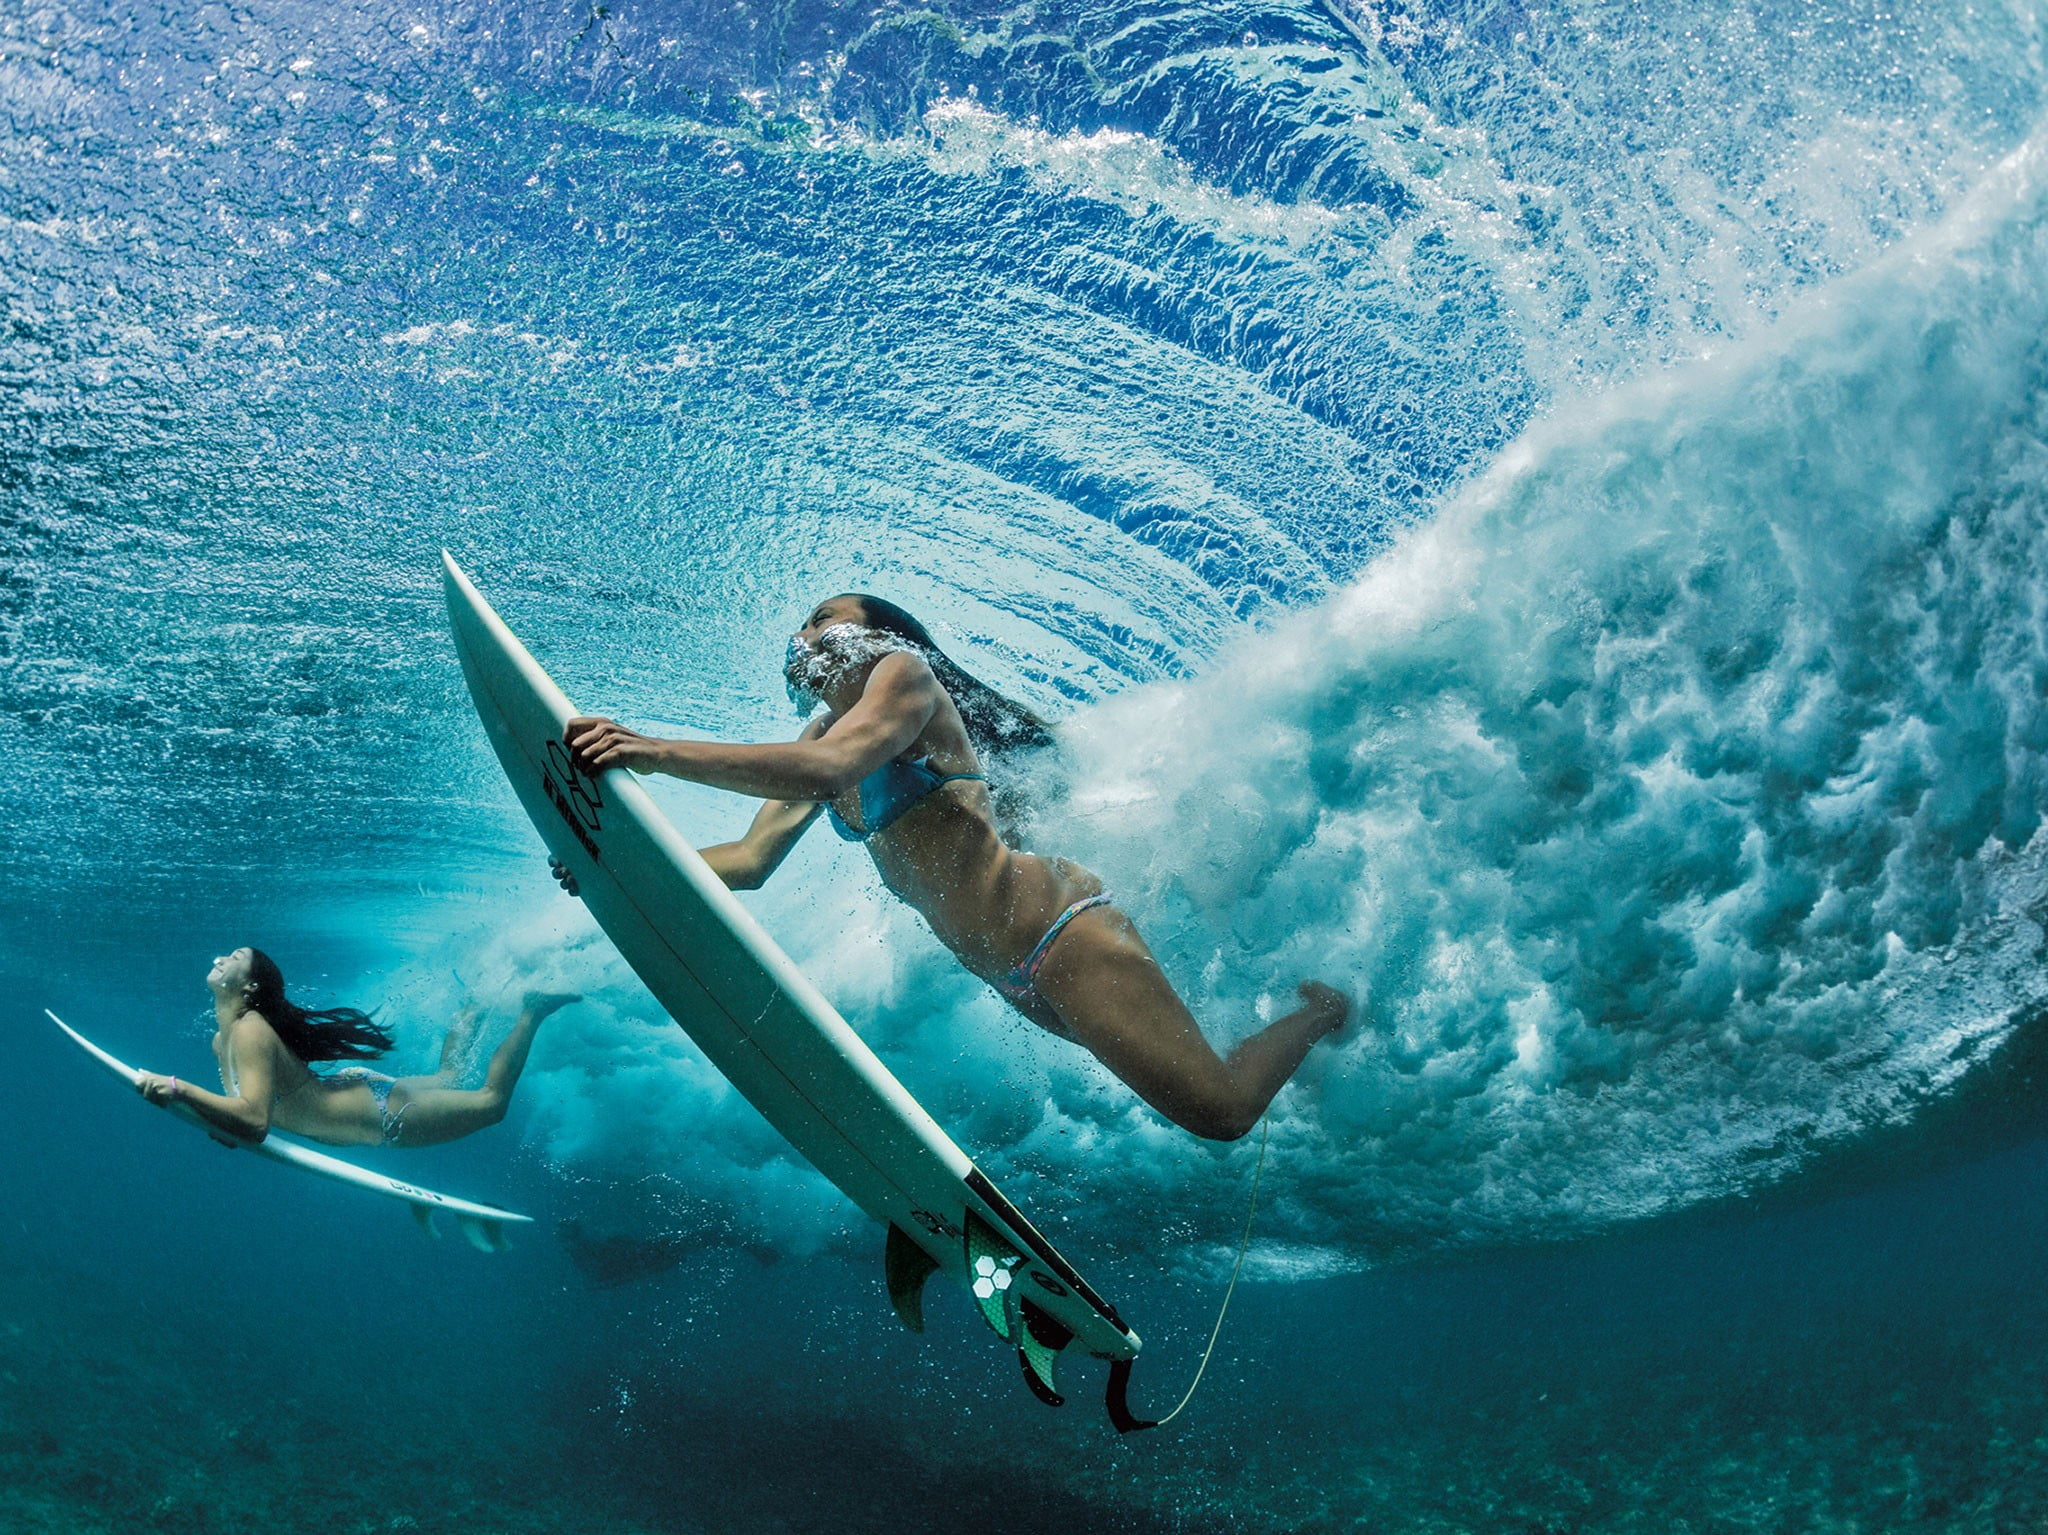 【100+】 サーフィン 画像 壁紙 女性 HDの壁紙画像